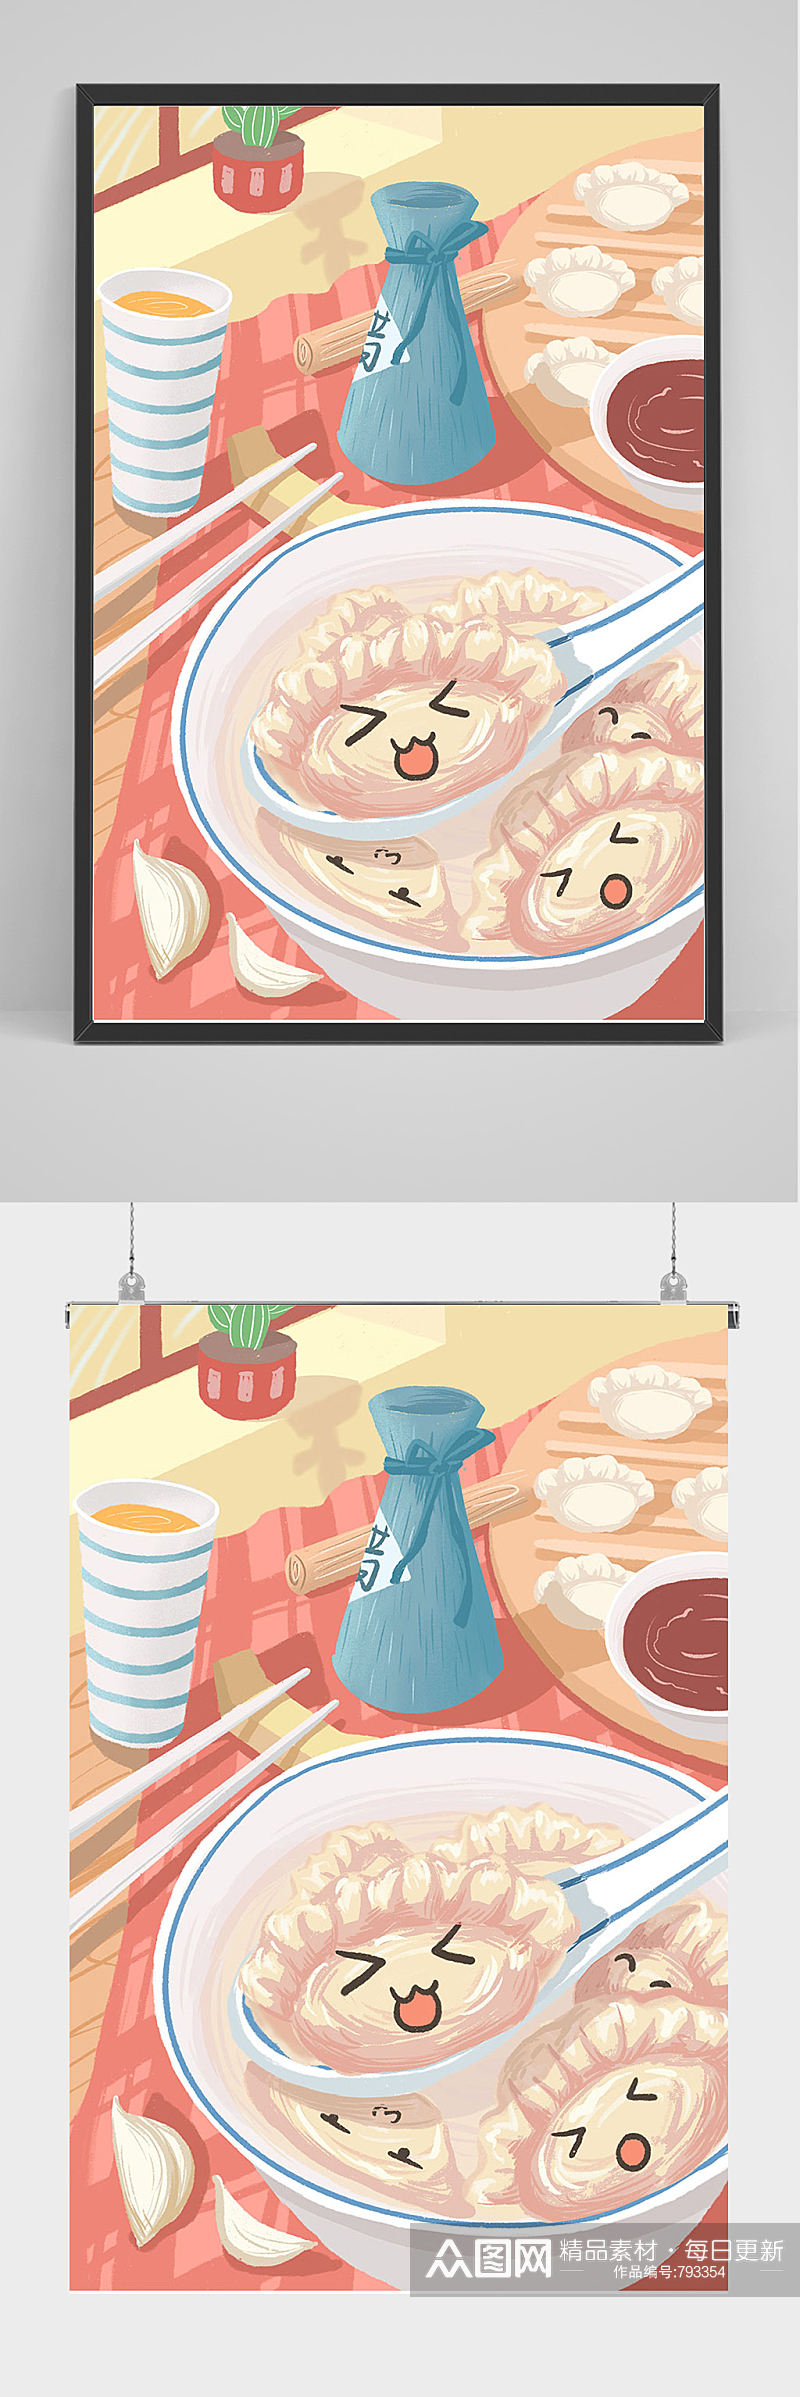 精品手绘水饺插画设计素材